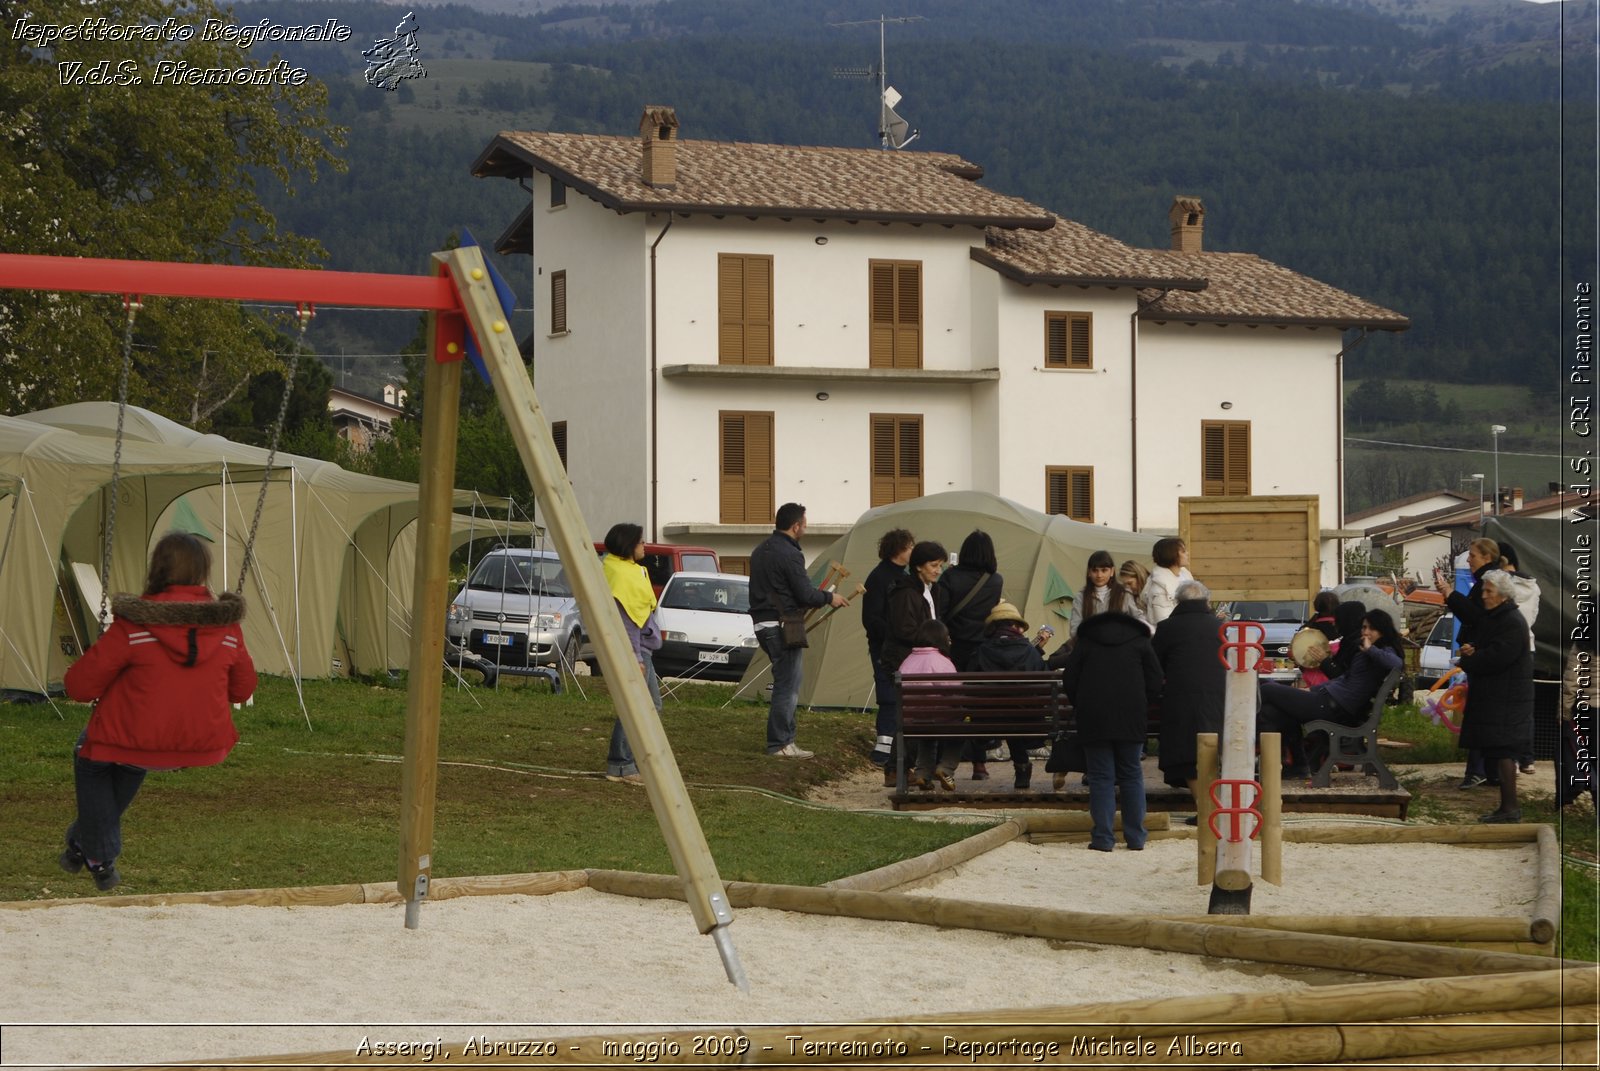 Assergi, Abruzzo -  maggio 2009 - Terremoto - Reportage Michele Albera -  Croce Rossa Italiana - Ispettorato Regionale Volontari del Soccorso Piemonte